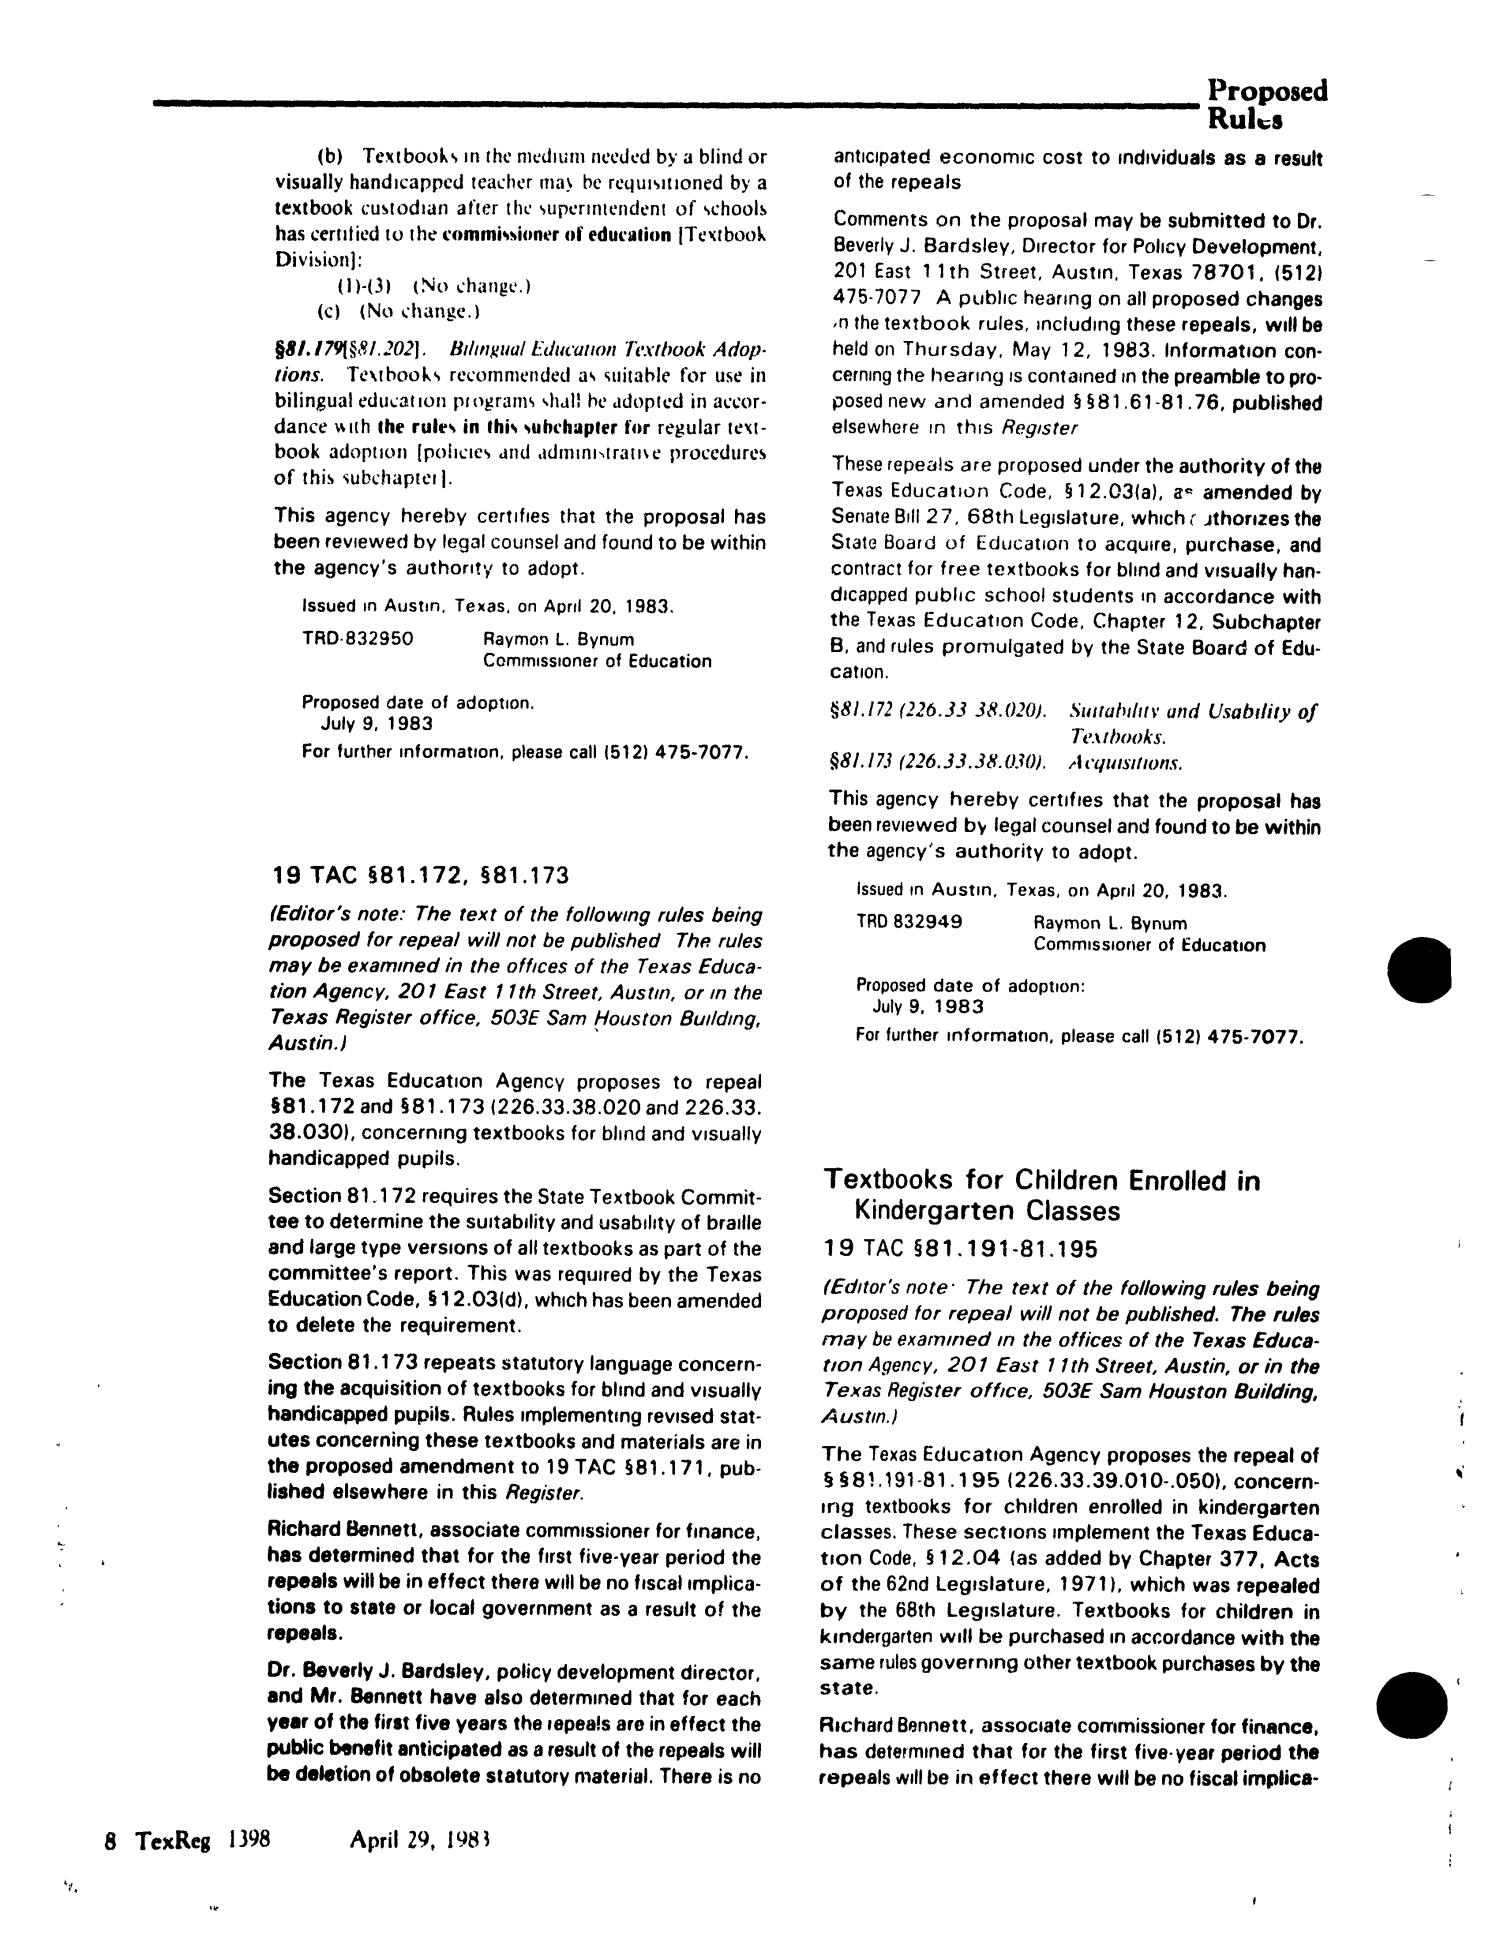 Texas Register, Volume 8, Number 30, Pages 1363-1438, April 29, 1983
                                                
                                                    1398
                                                